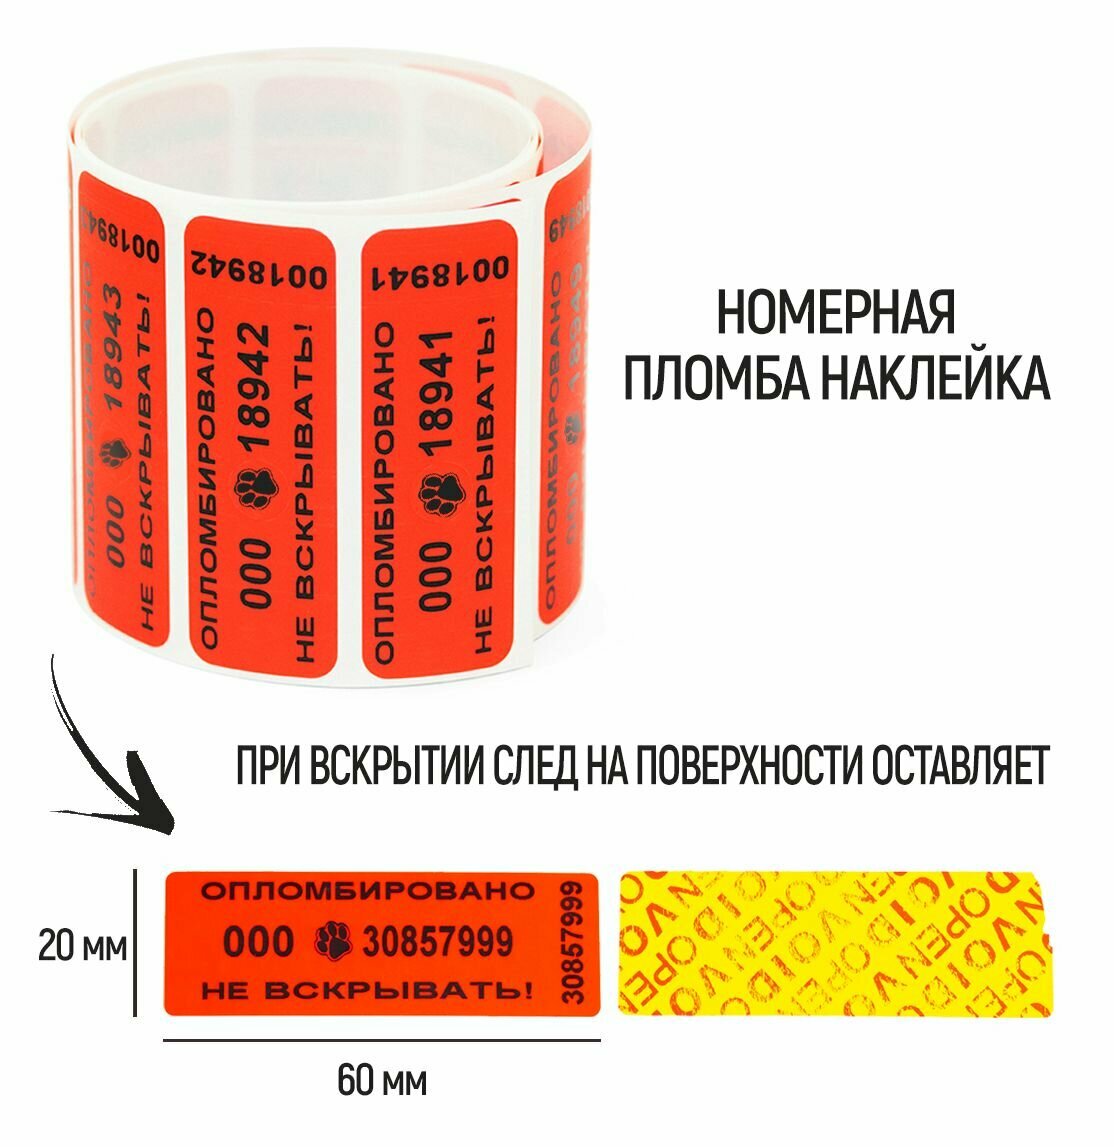 Пломбы наклейки 60 х 20 мм, красные, со следом (упаковка 1000 штук)